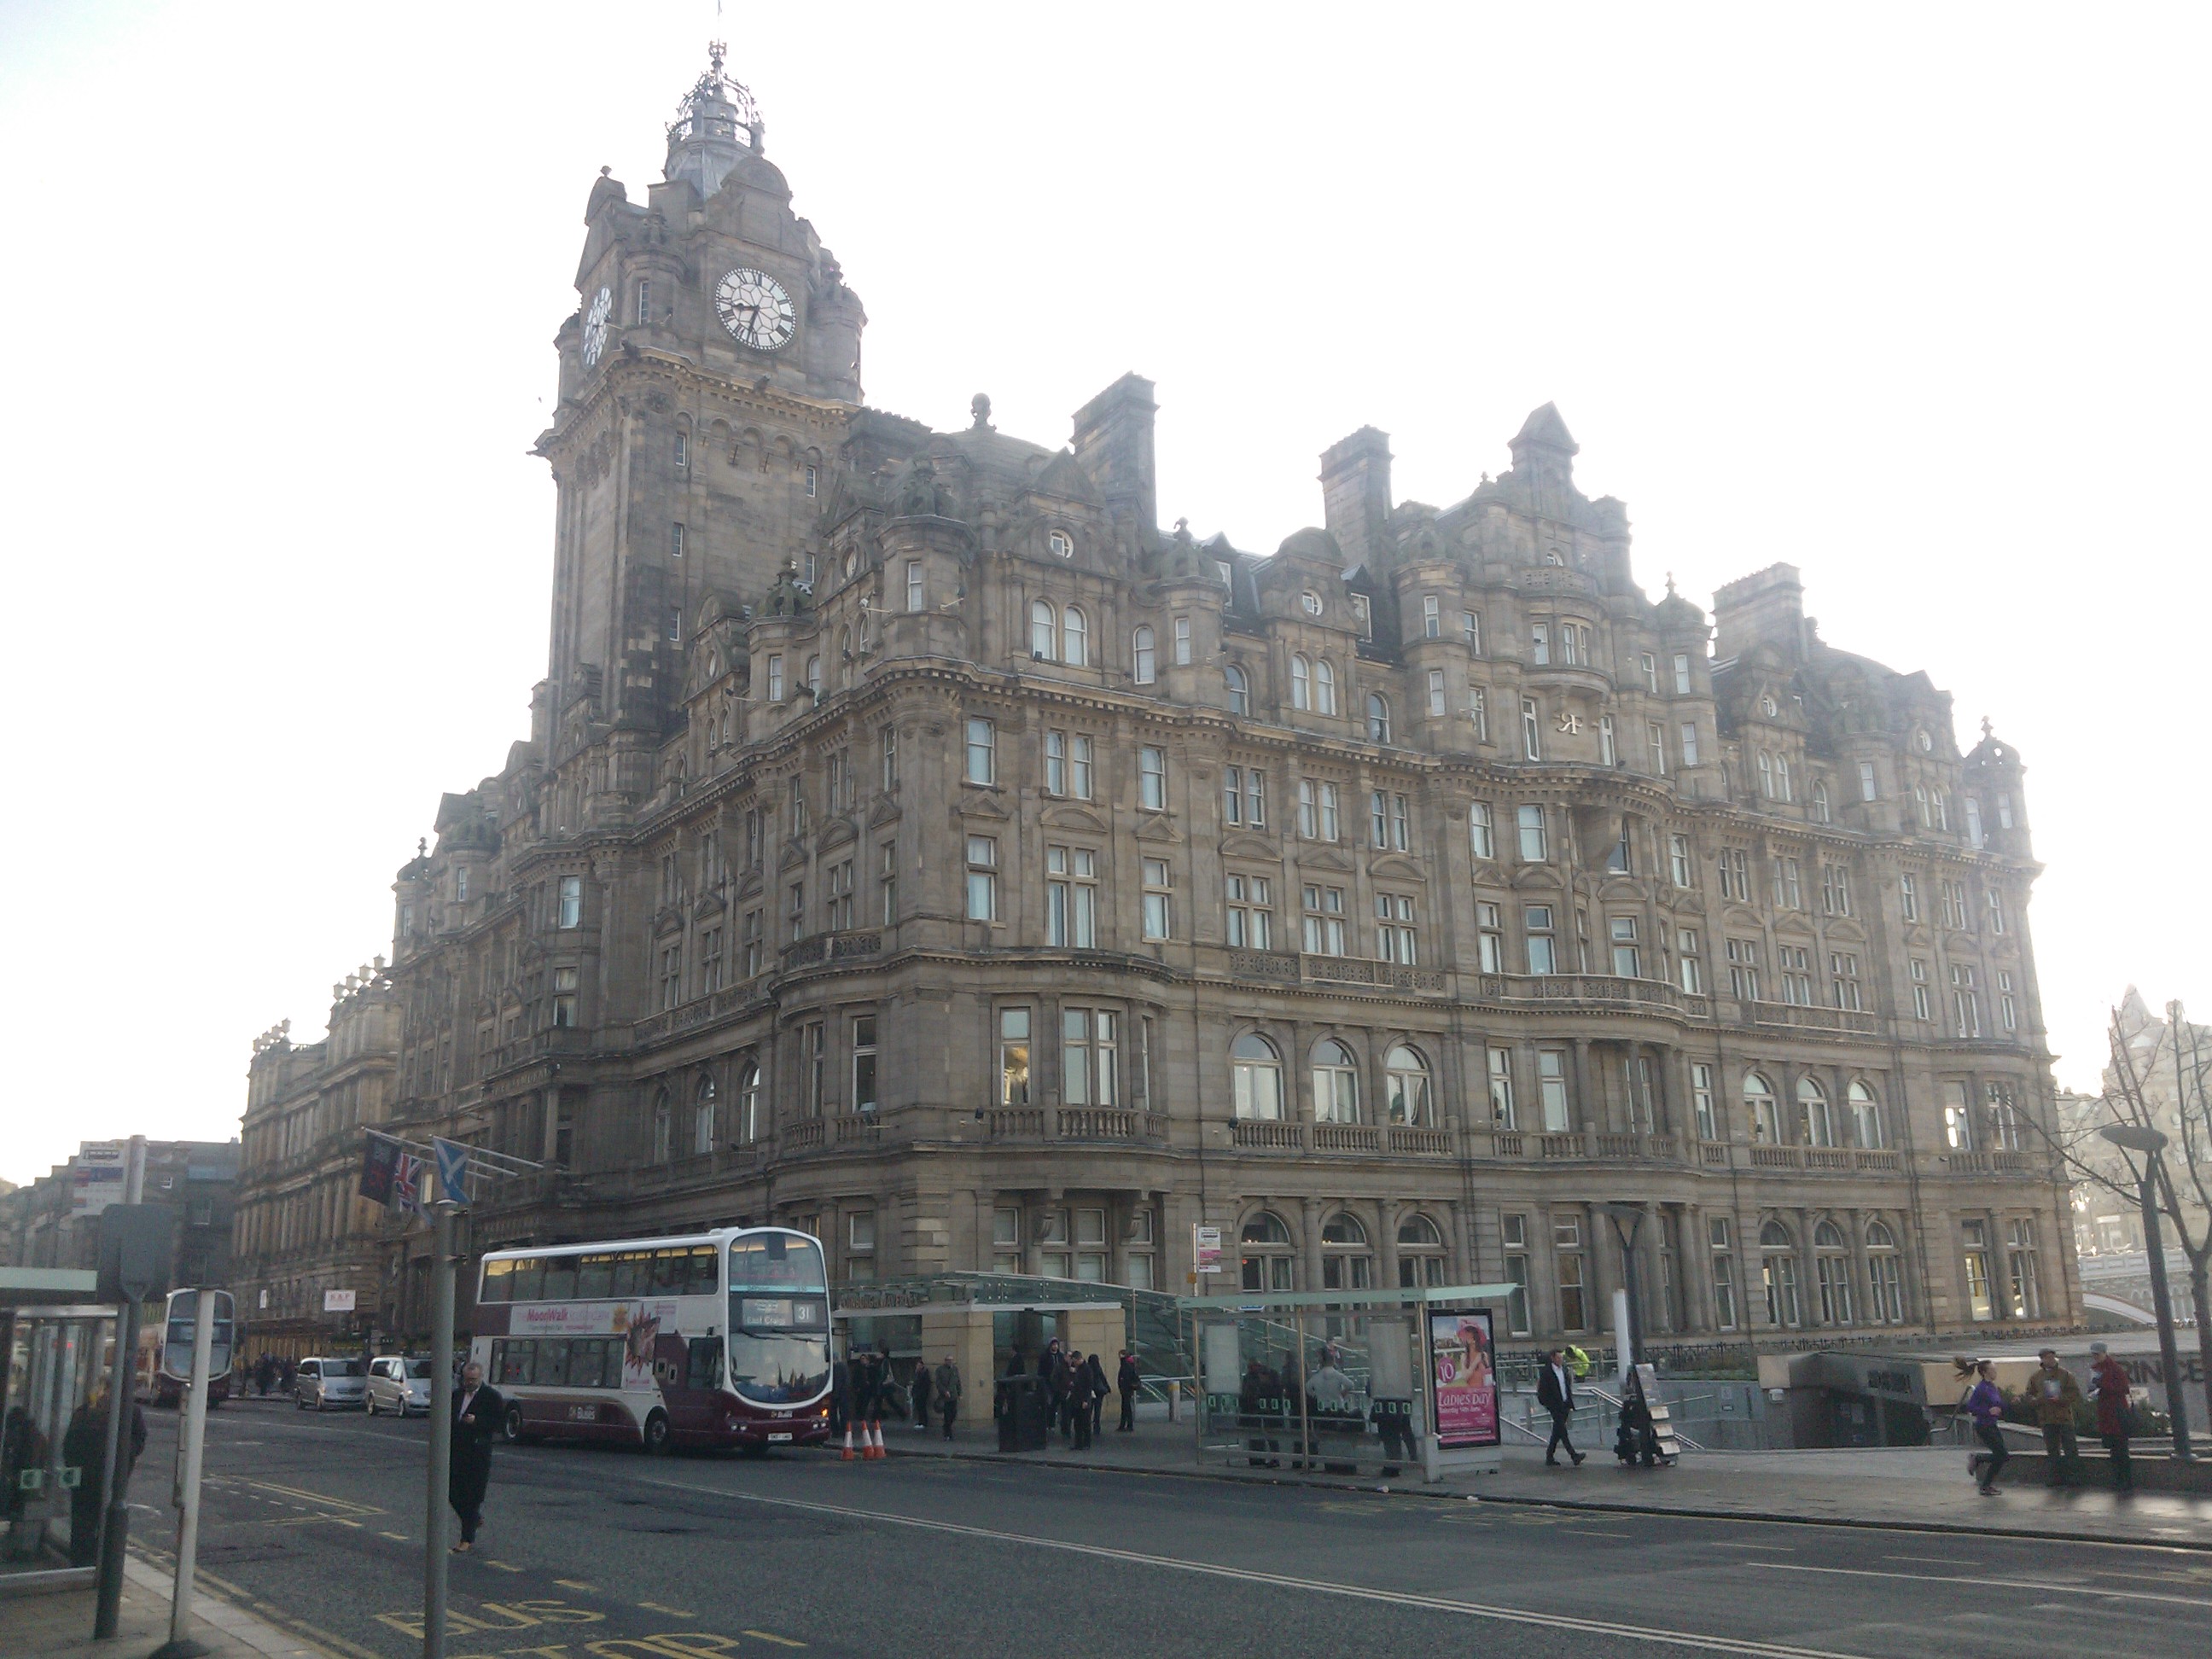 A Balmoral hotel, Edinburgh, Waverly központi vasútállomás mellett.